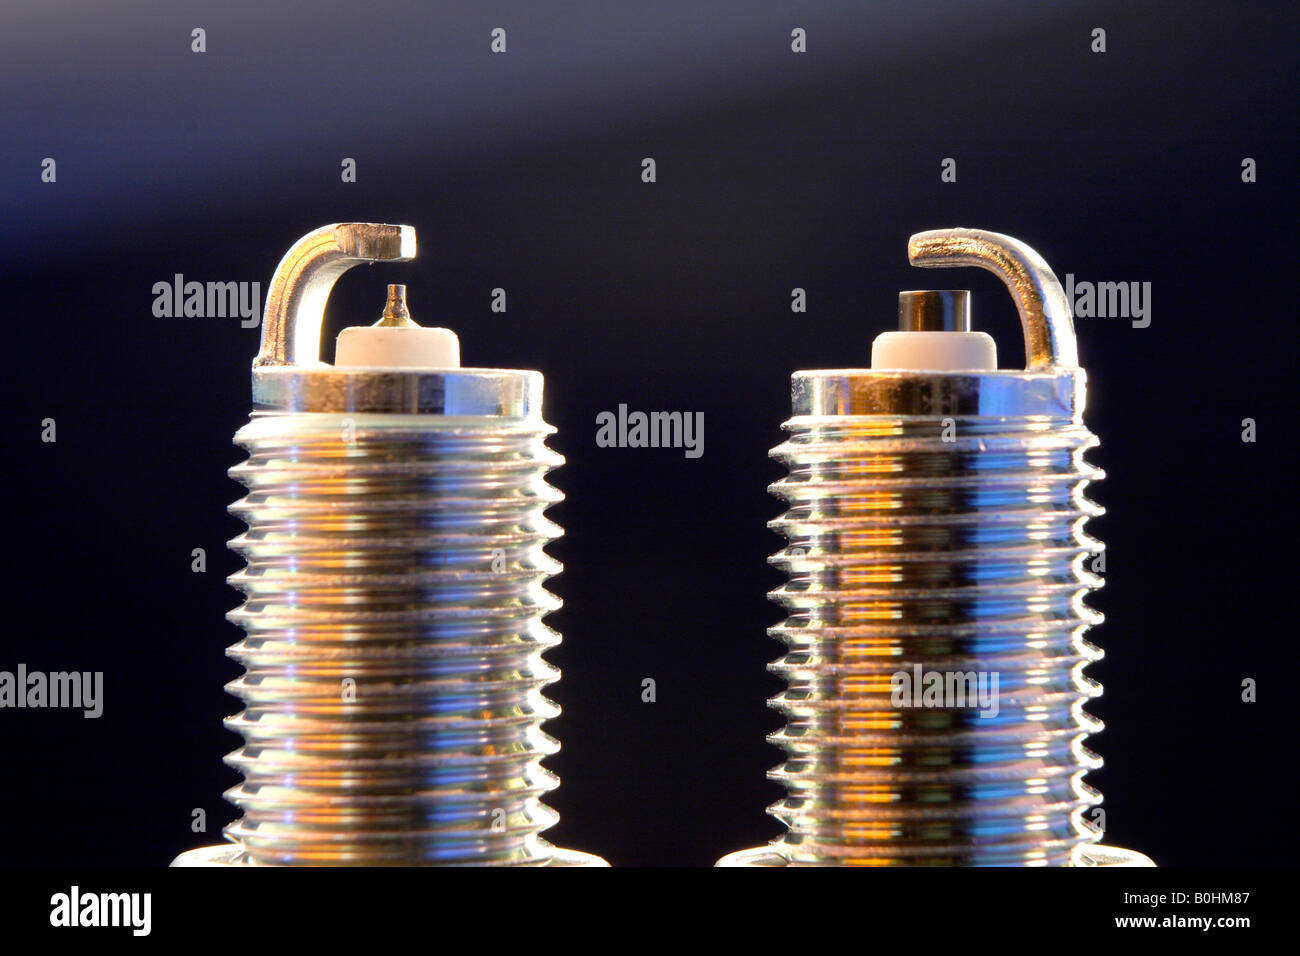 Comparación de Iridium y bujía bujía estándar Fotografía de stock - Alamy